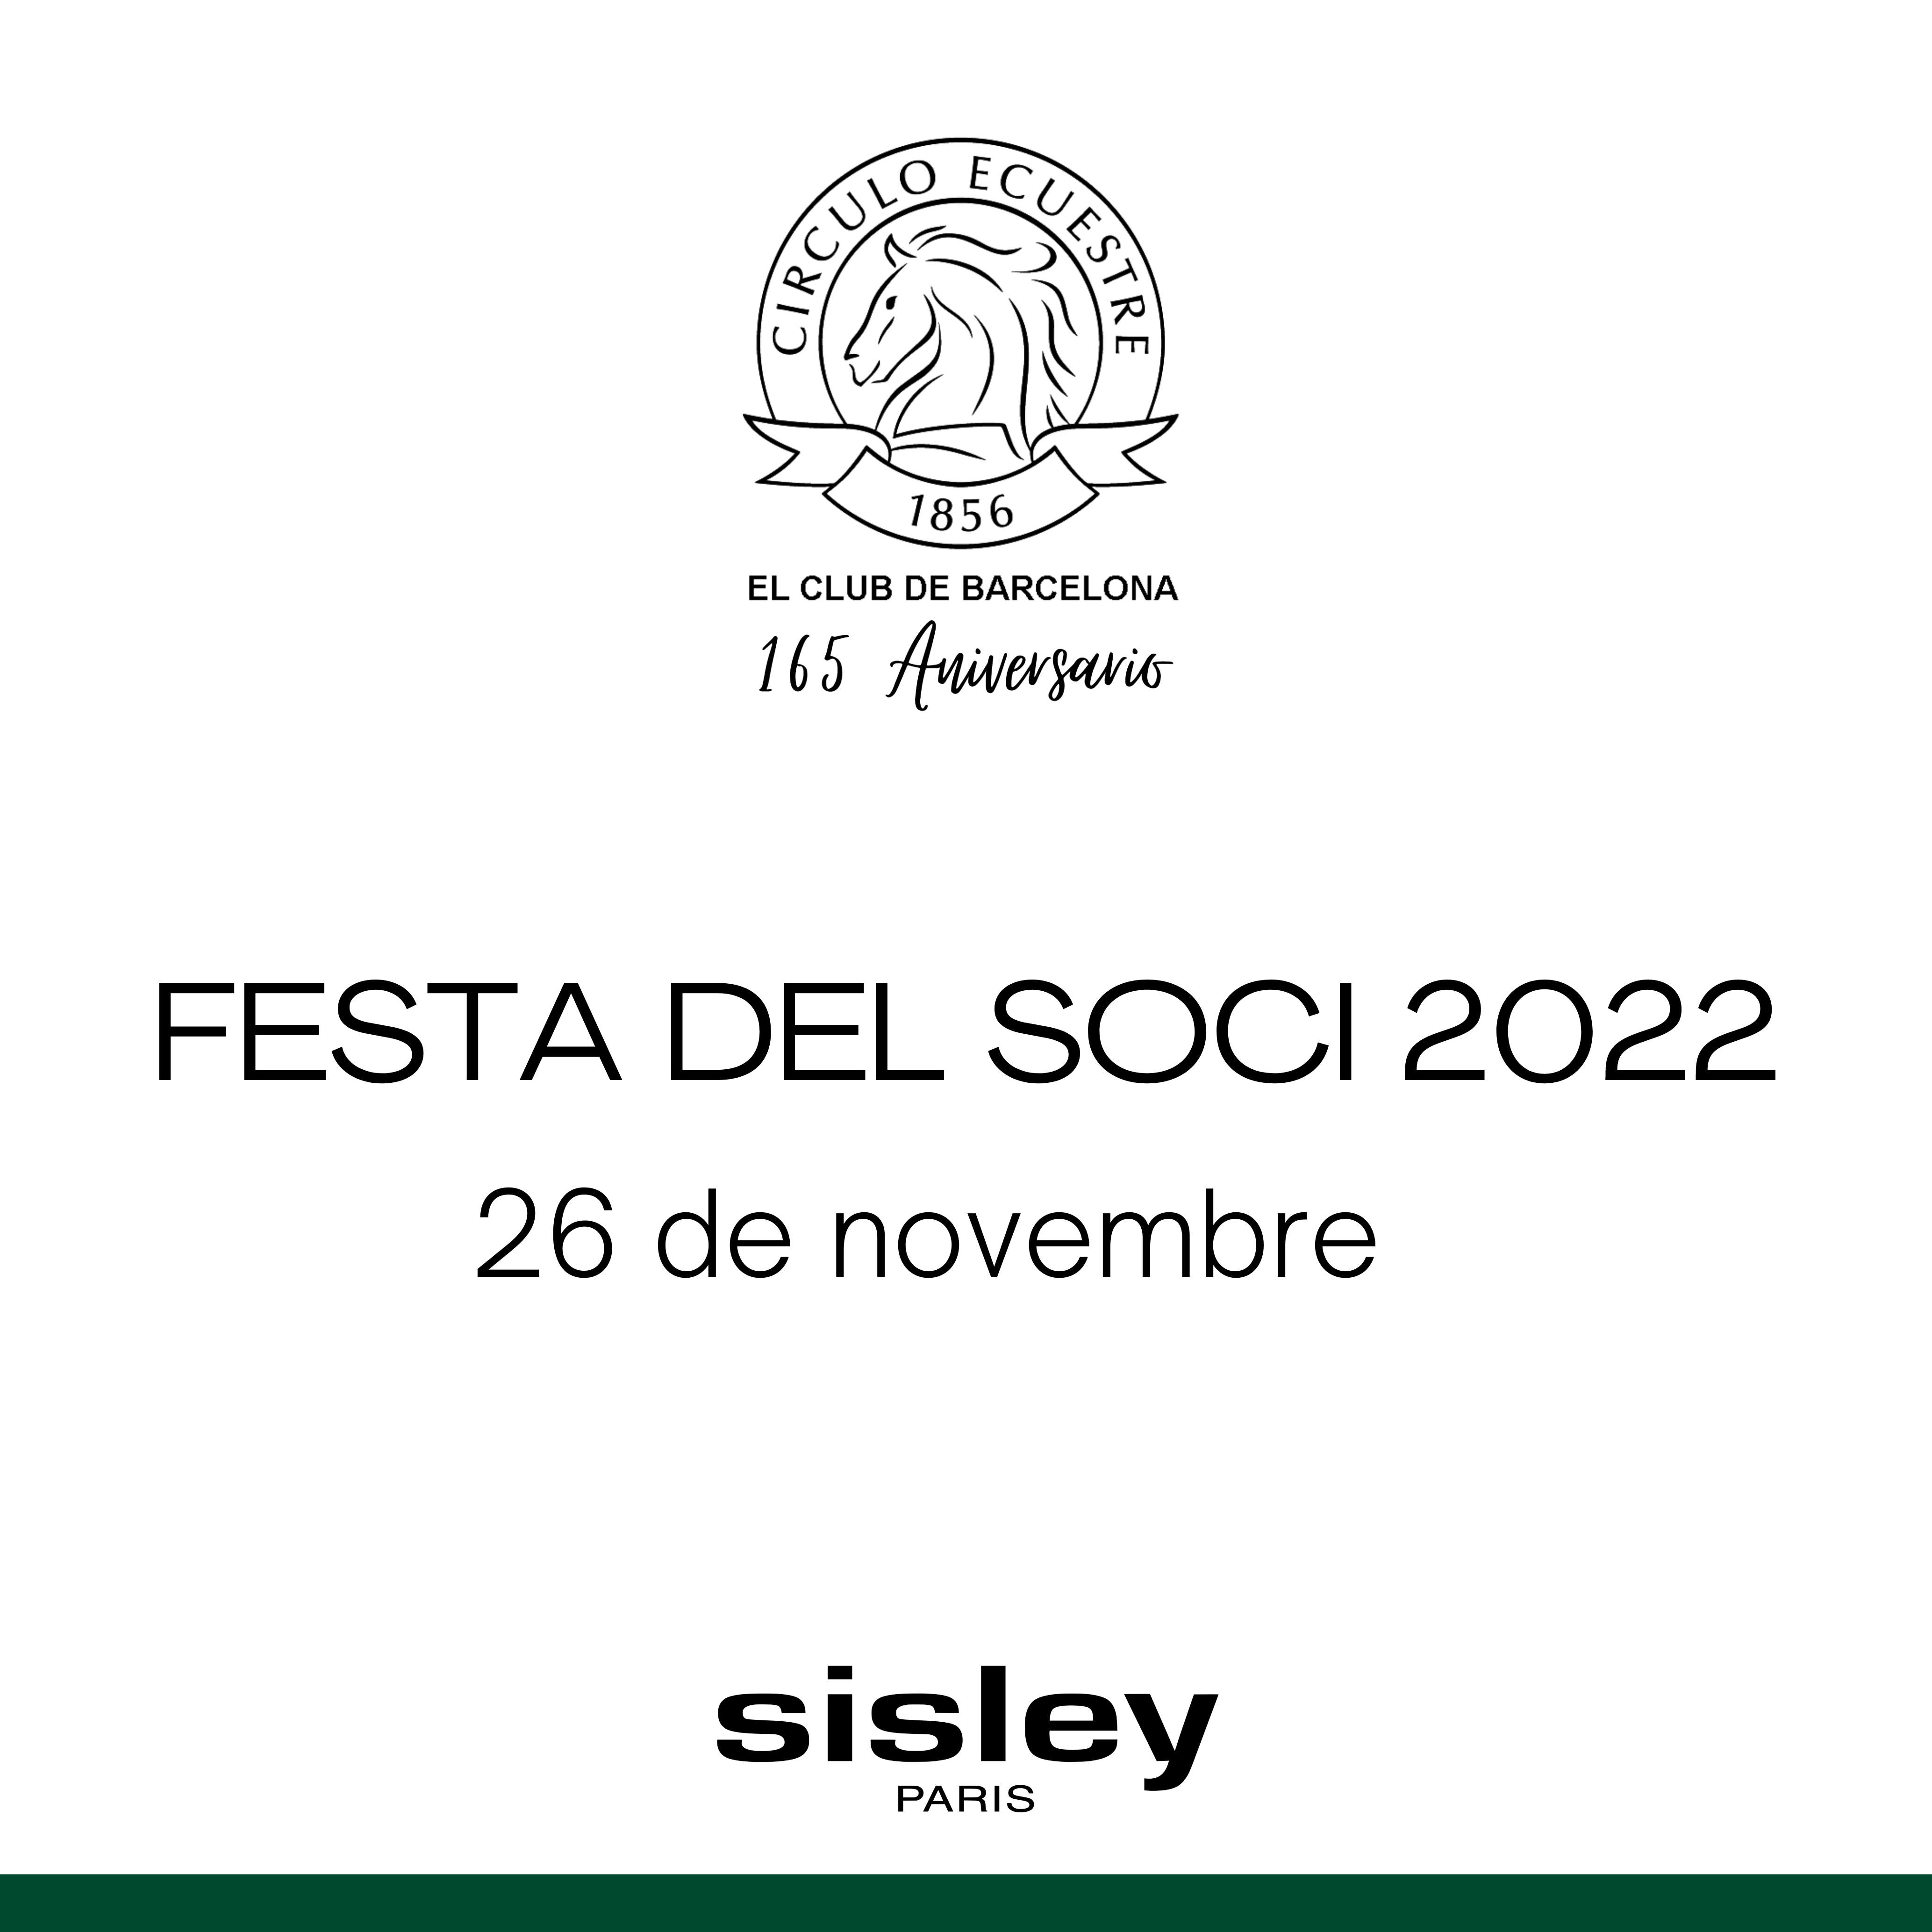 FESTA DEL SOCI 2022